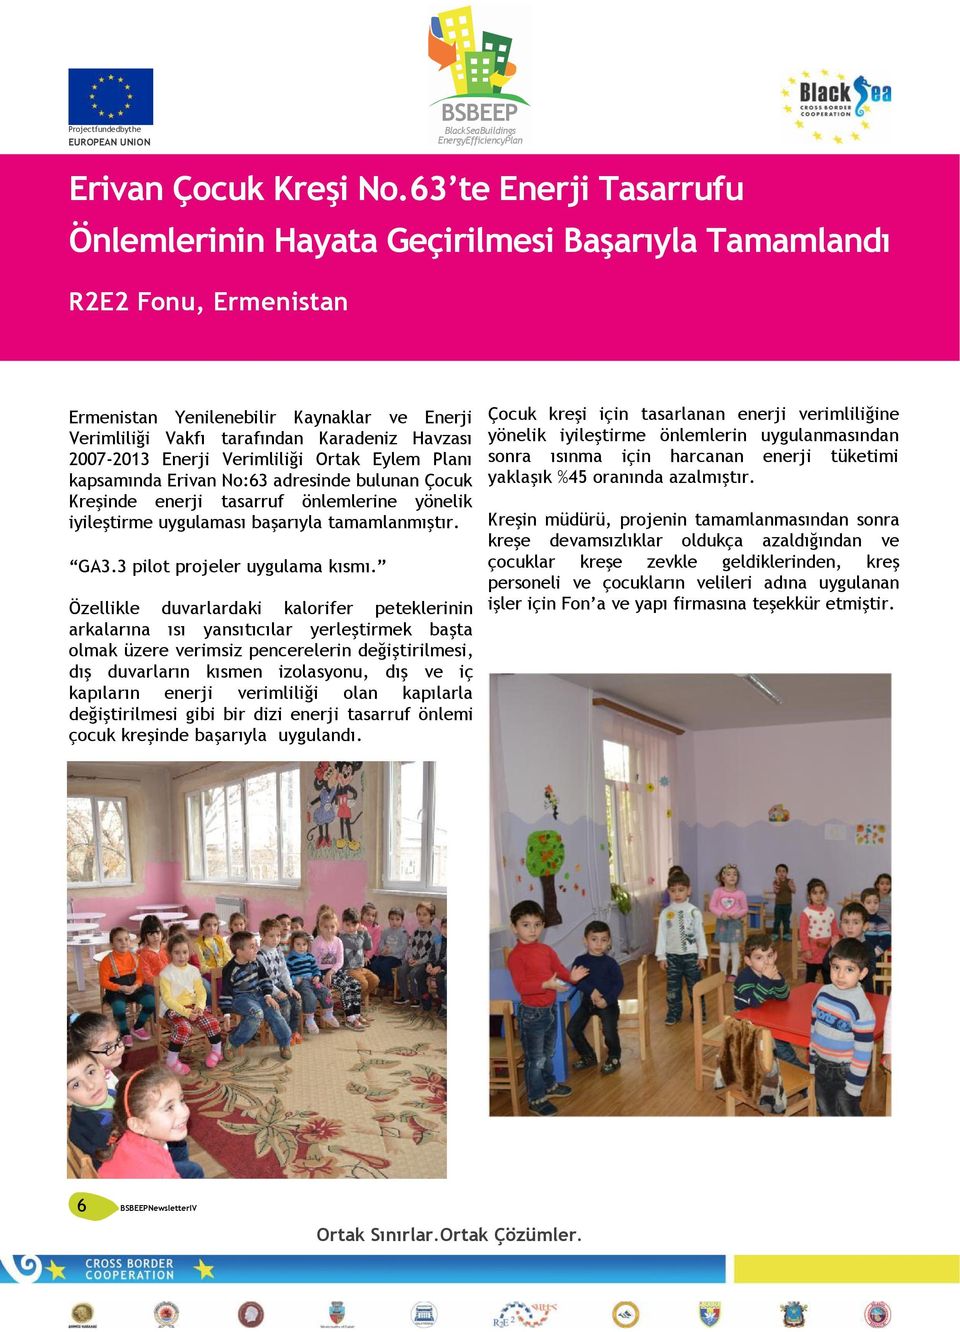 Enerji Verimliliği Ortak Eylem Planı kapsamında Erivan No:63 adresinde bulunan Çocuk Kreşinde enerji tasarruf önlemlerine yönelik iyileştirme uygulaması başarıyla tamamlanmıştır. GA3.